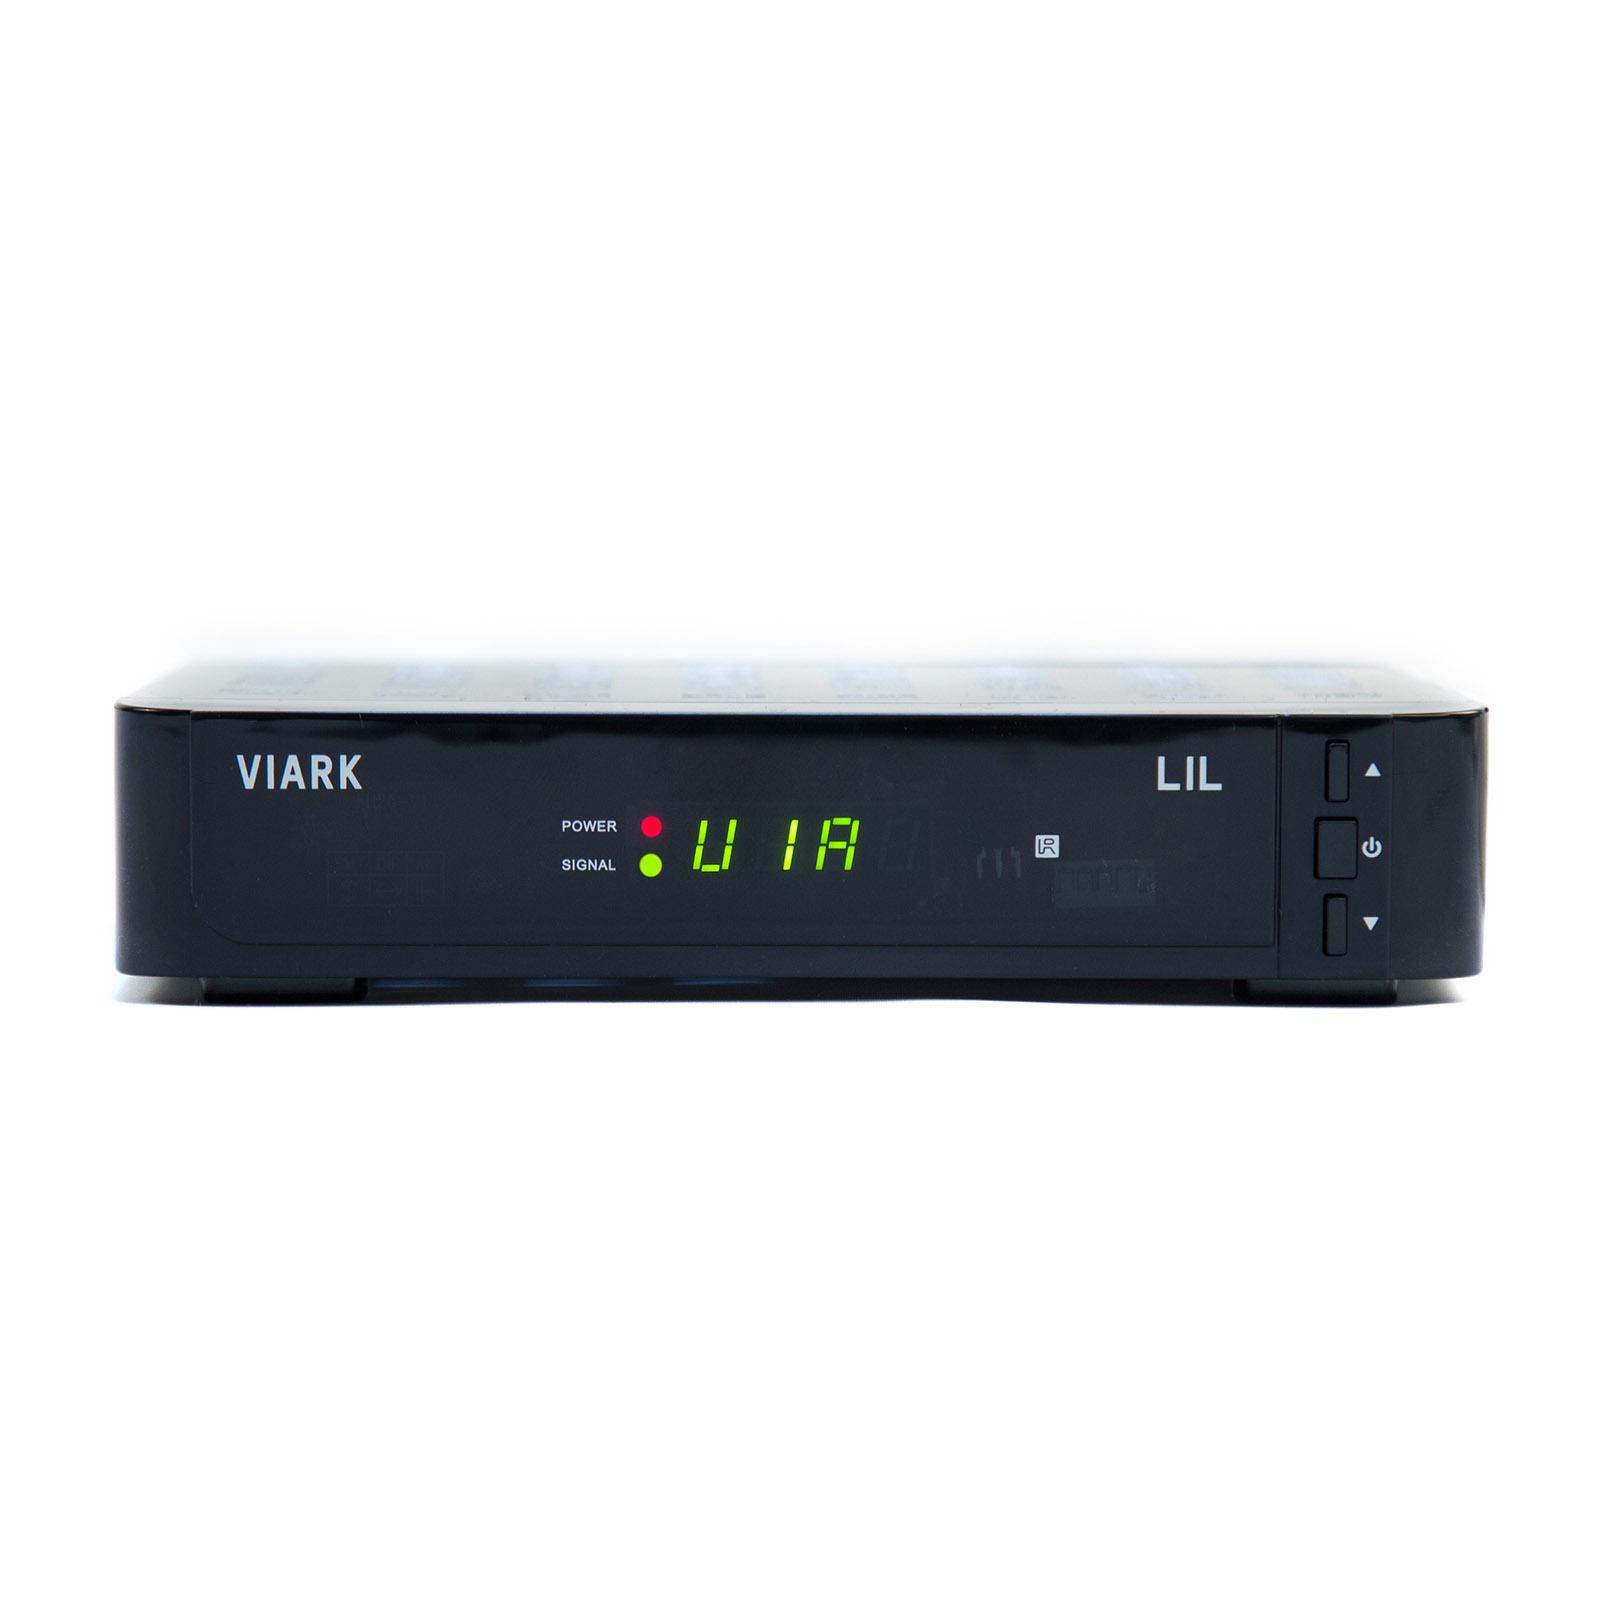 Viark Sat 4K UHD H.265 2160p DVB-S2X MS Receiver LAN Wi-Fi Black